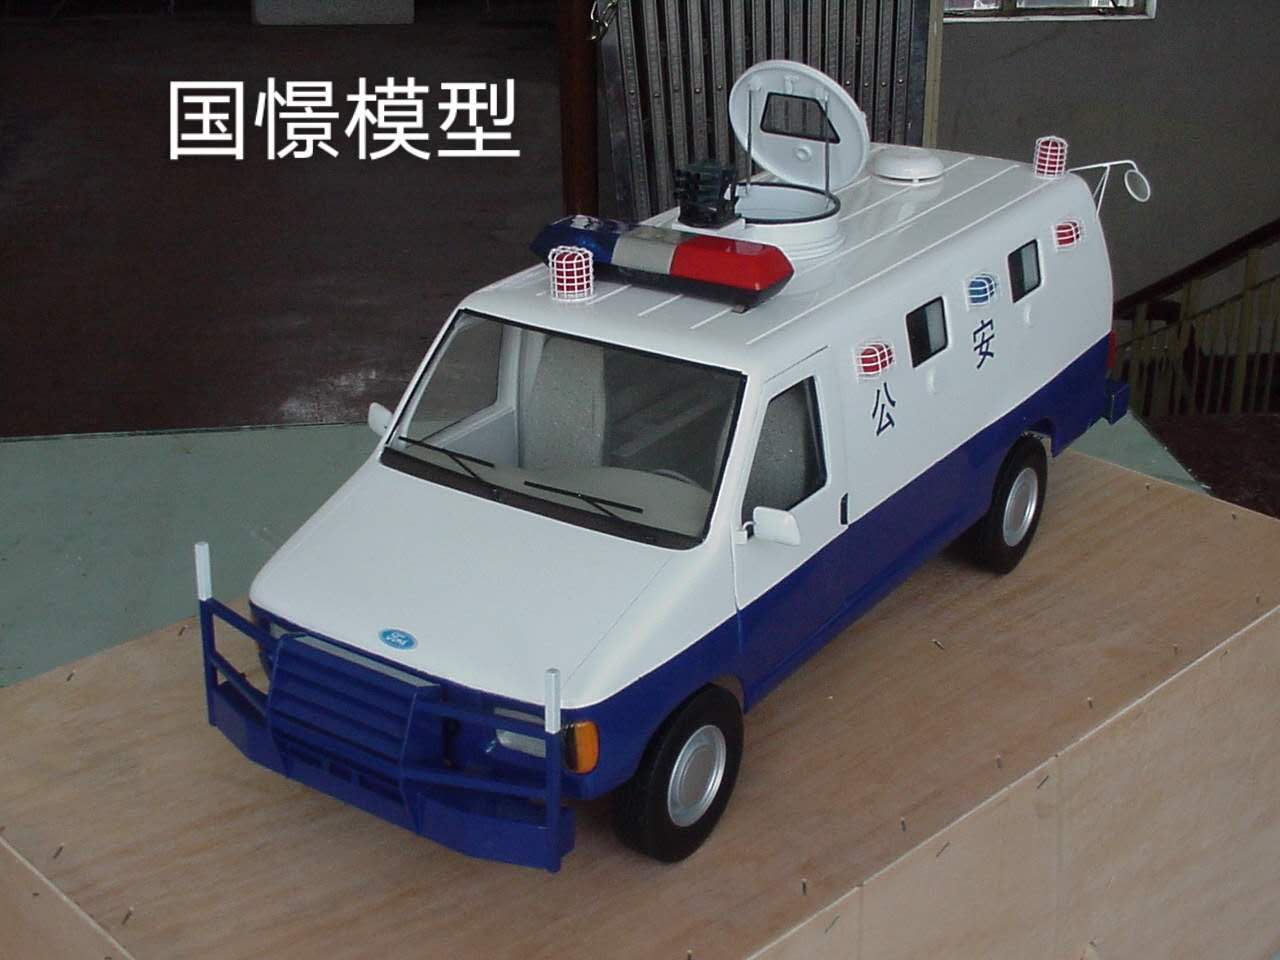 邓州市车辆模型